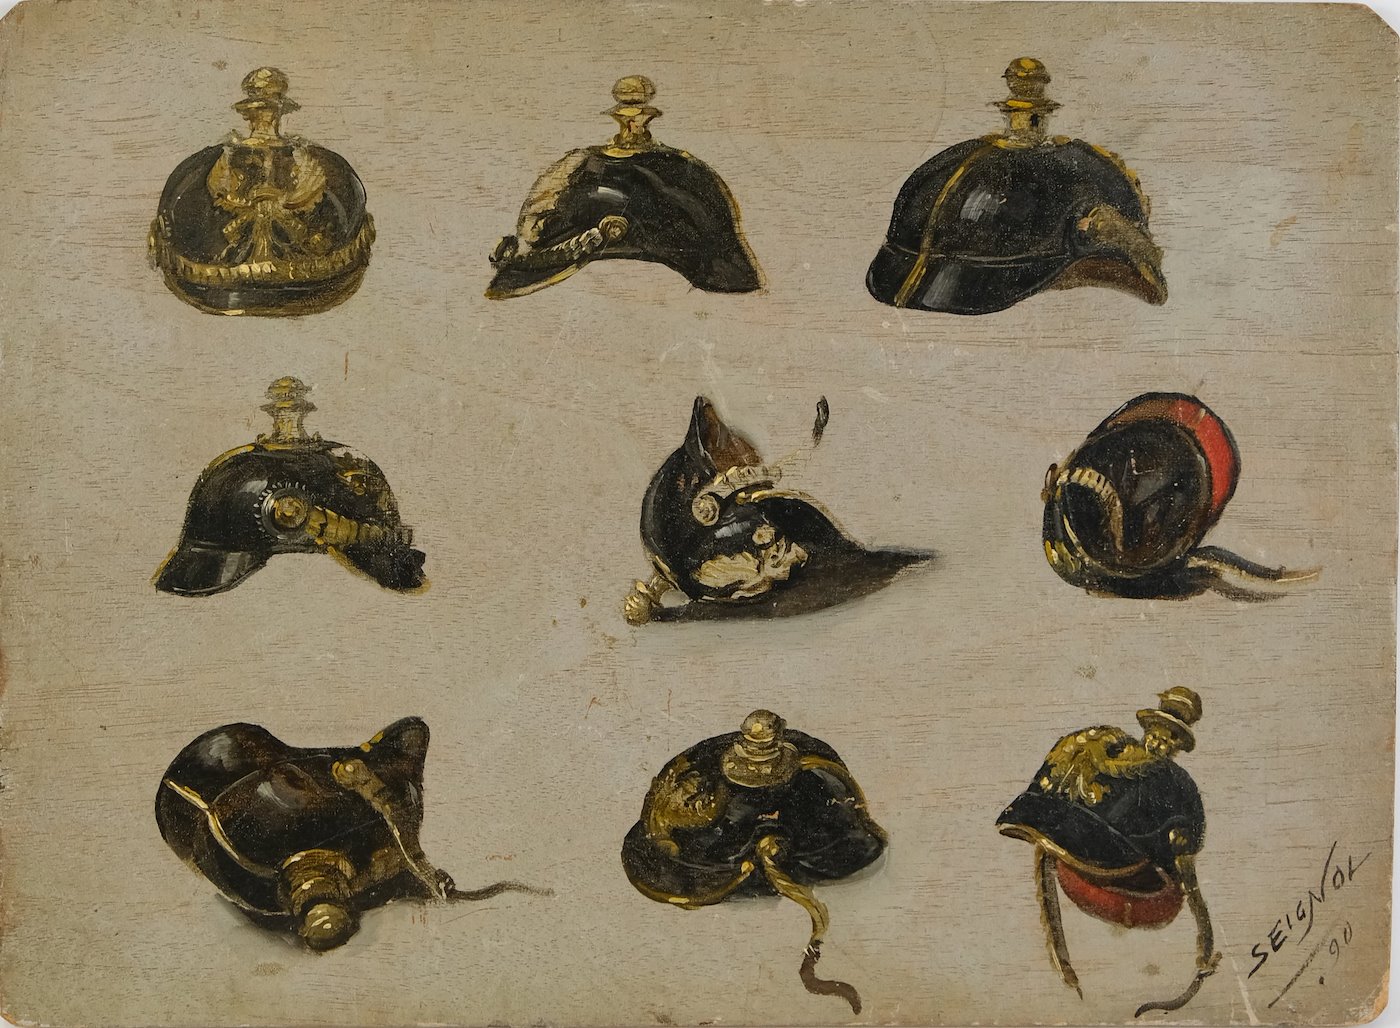 Seignol - Studie pruské přilby